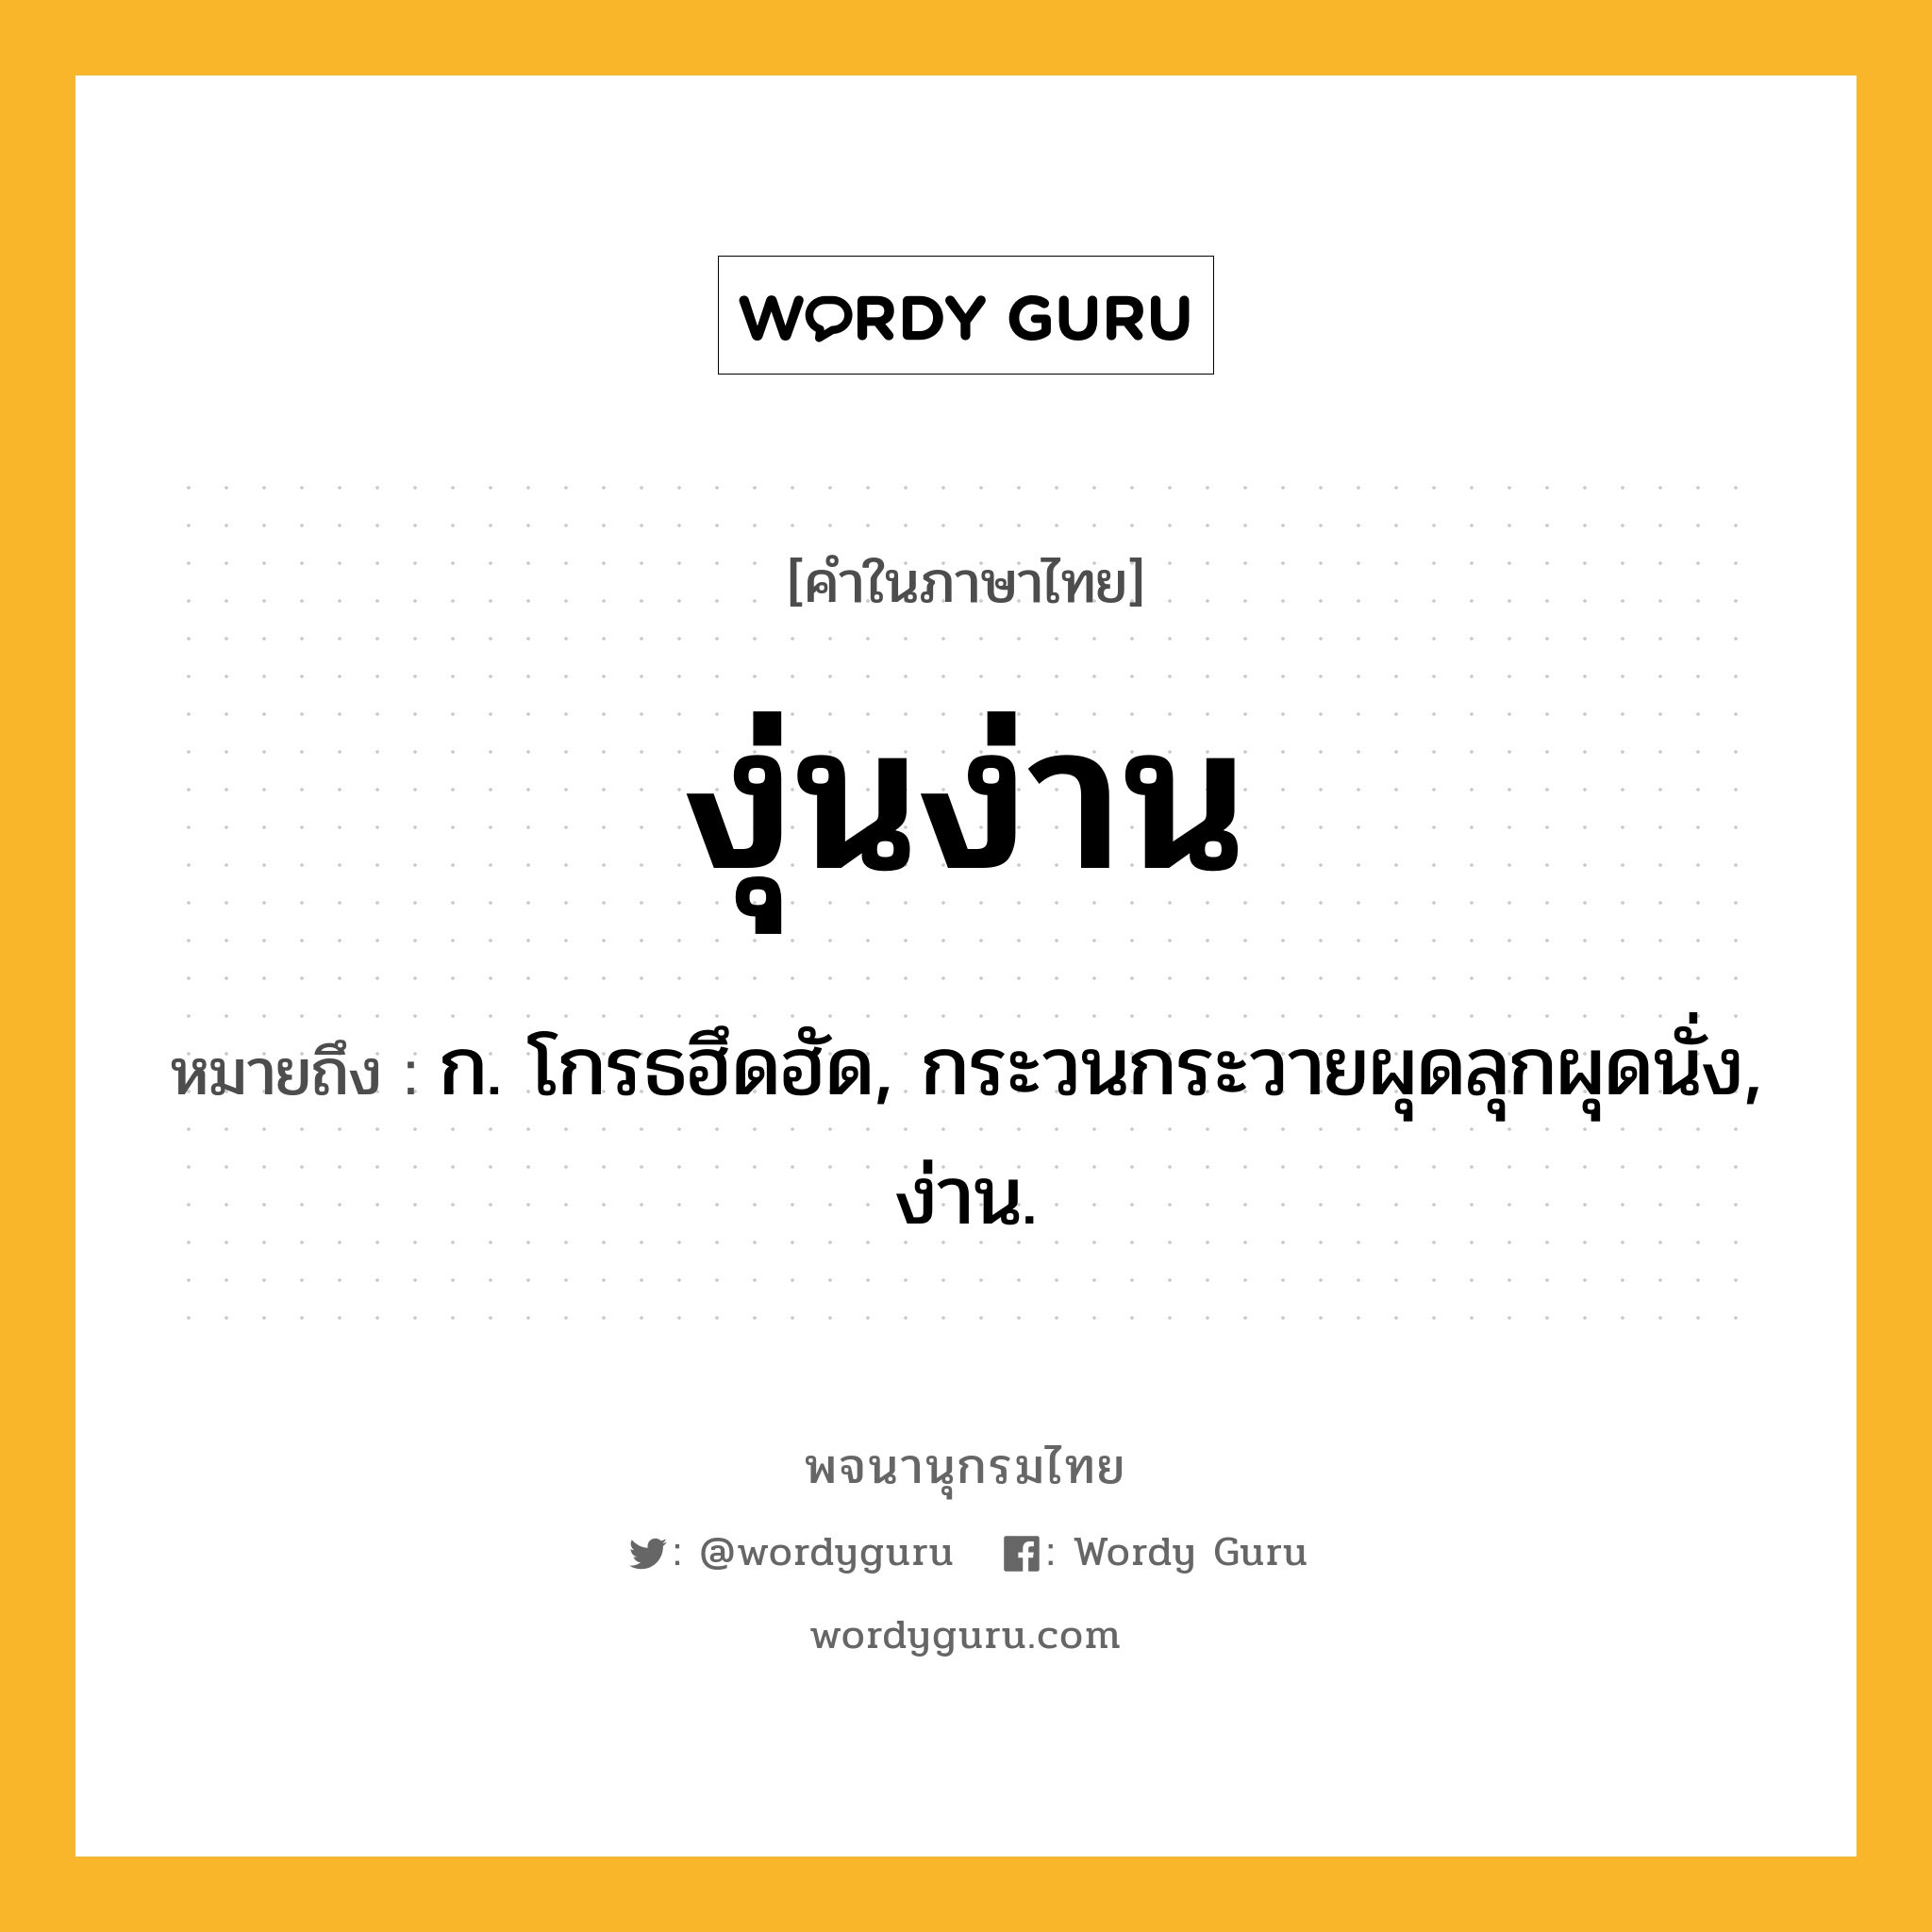 งุ่นง่าน ความหมาย หมายถึงอะไร?, คำในภาษาไทย งุ่นง่าน หมายถึง ก. โกรธฮึดฮัด, กระวนกระวายผุดลุกผุดนั่ง, ง่าน.